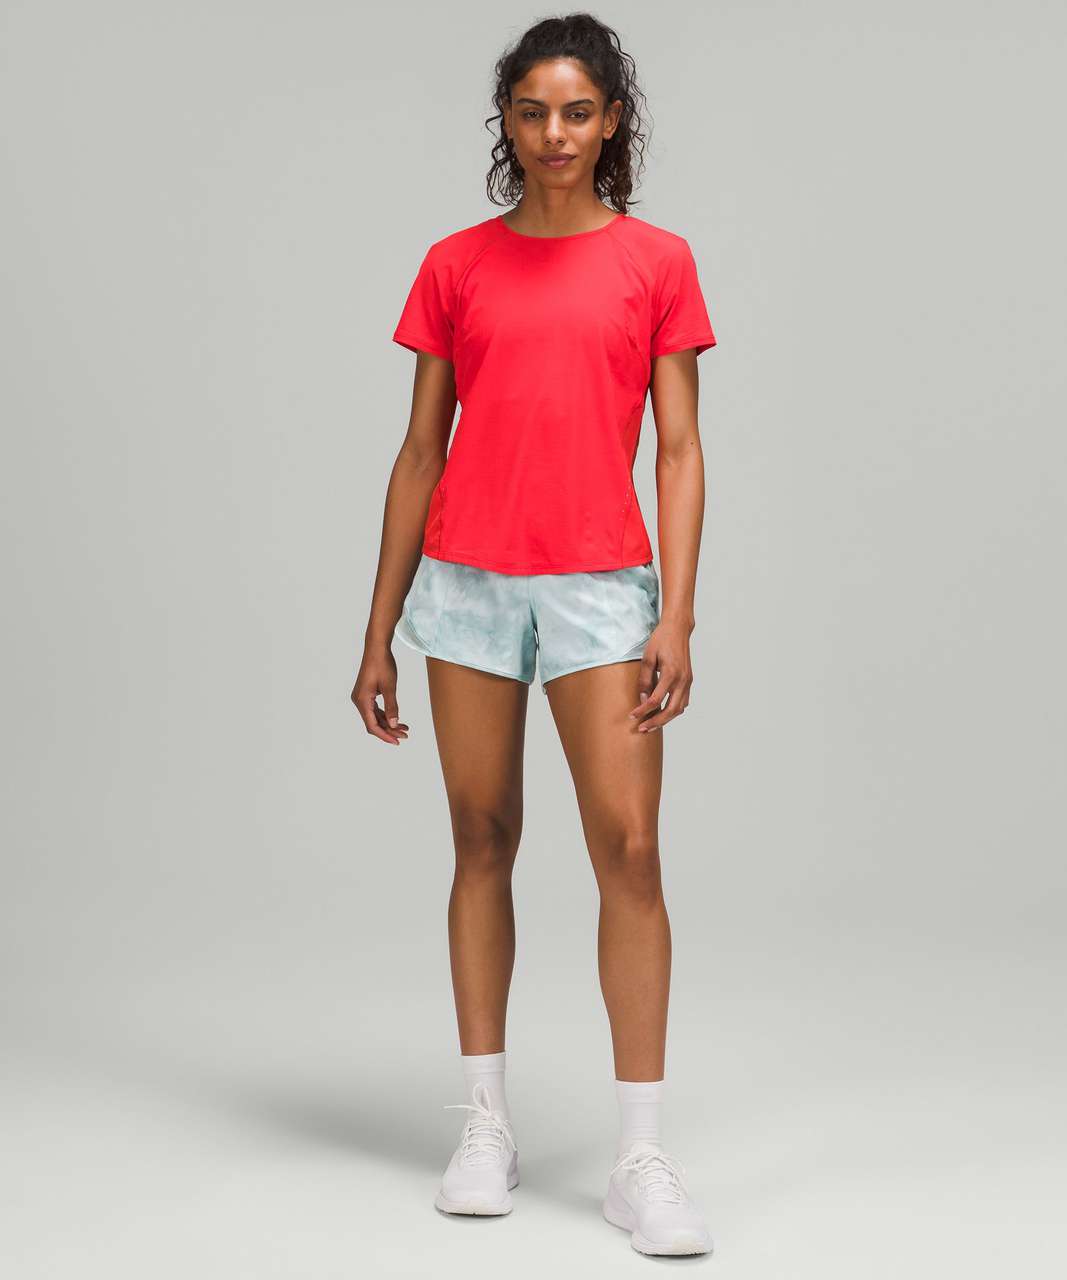 Lululemon Lightweight Stretch Running Short Sleeve Shirt - Love Red